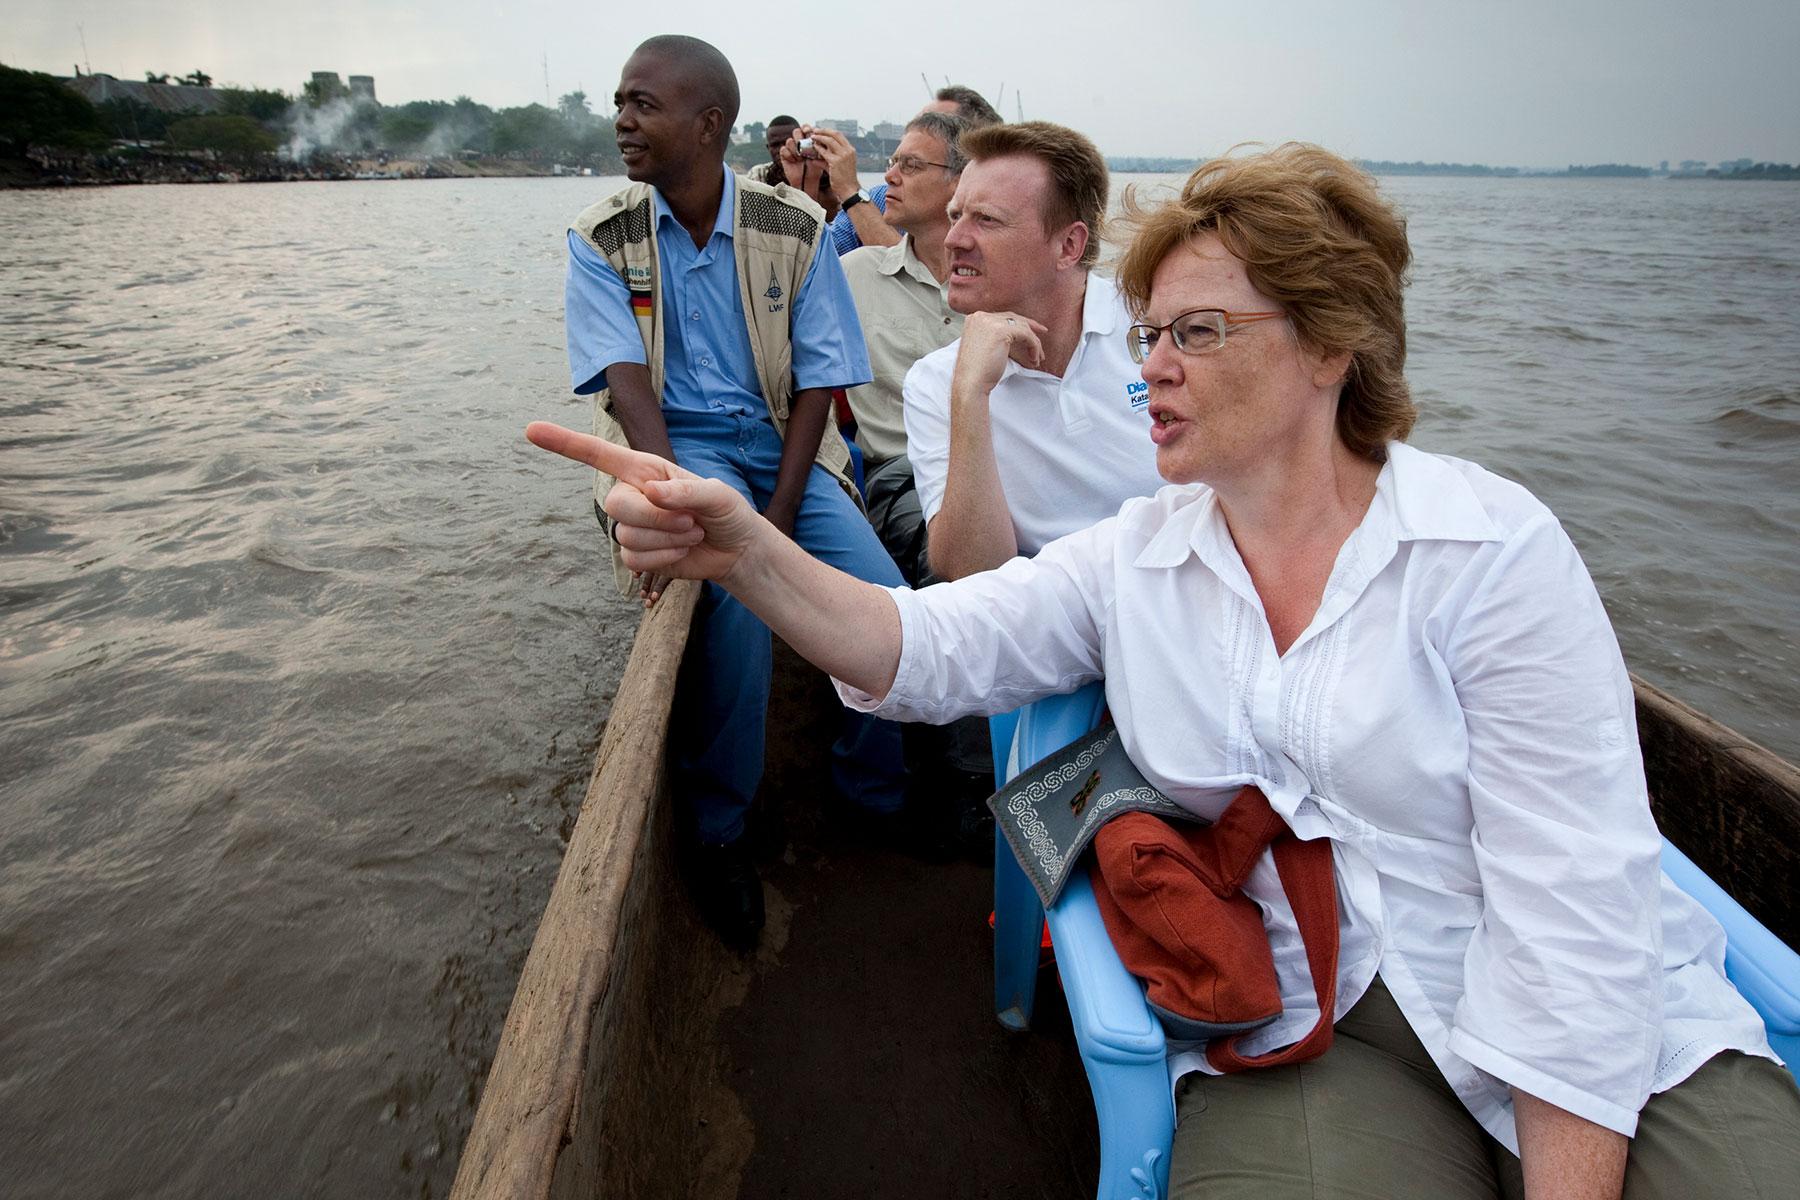 Cornelia Füllkrug-Weitzel bei einer Bootstfahrt auf dem Kongo in der Demokratischen Republik Kongo, 2010. Foto: Christoph Püschner/Brot für die Welt